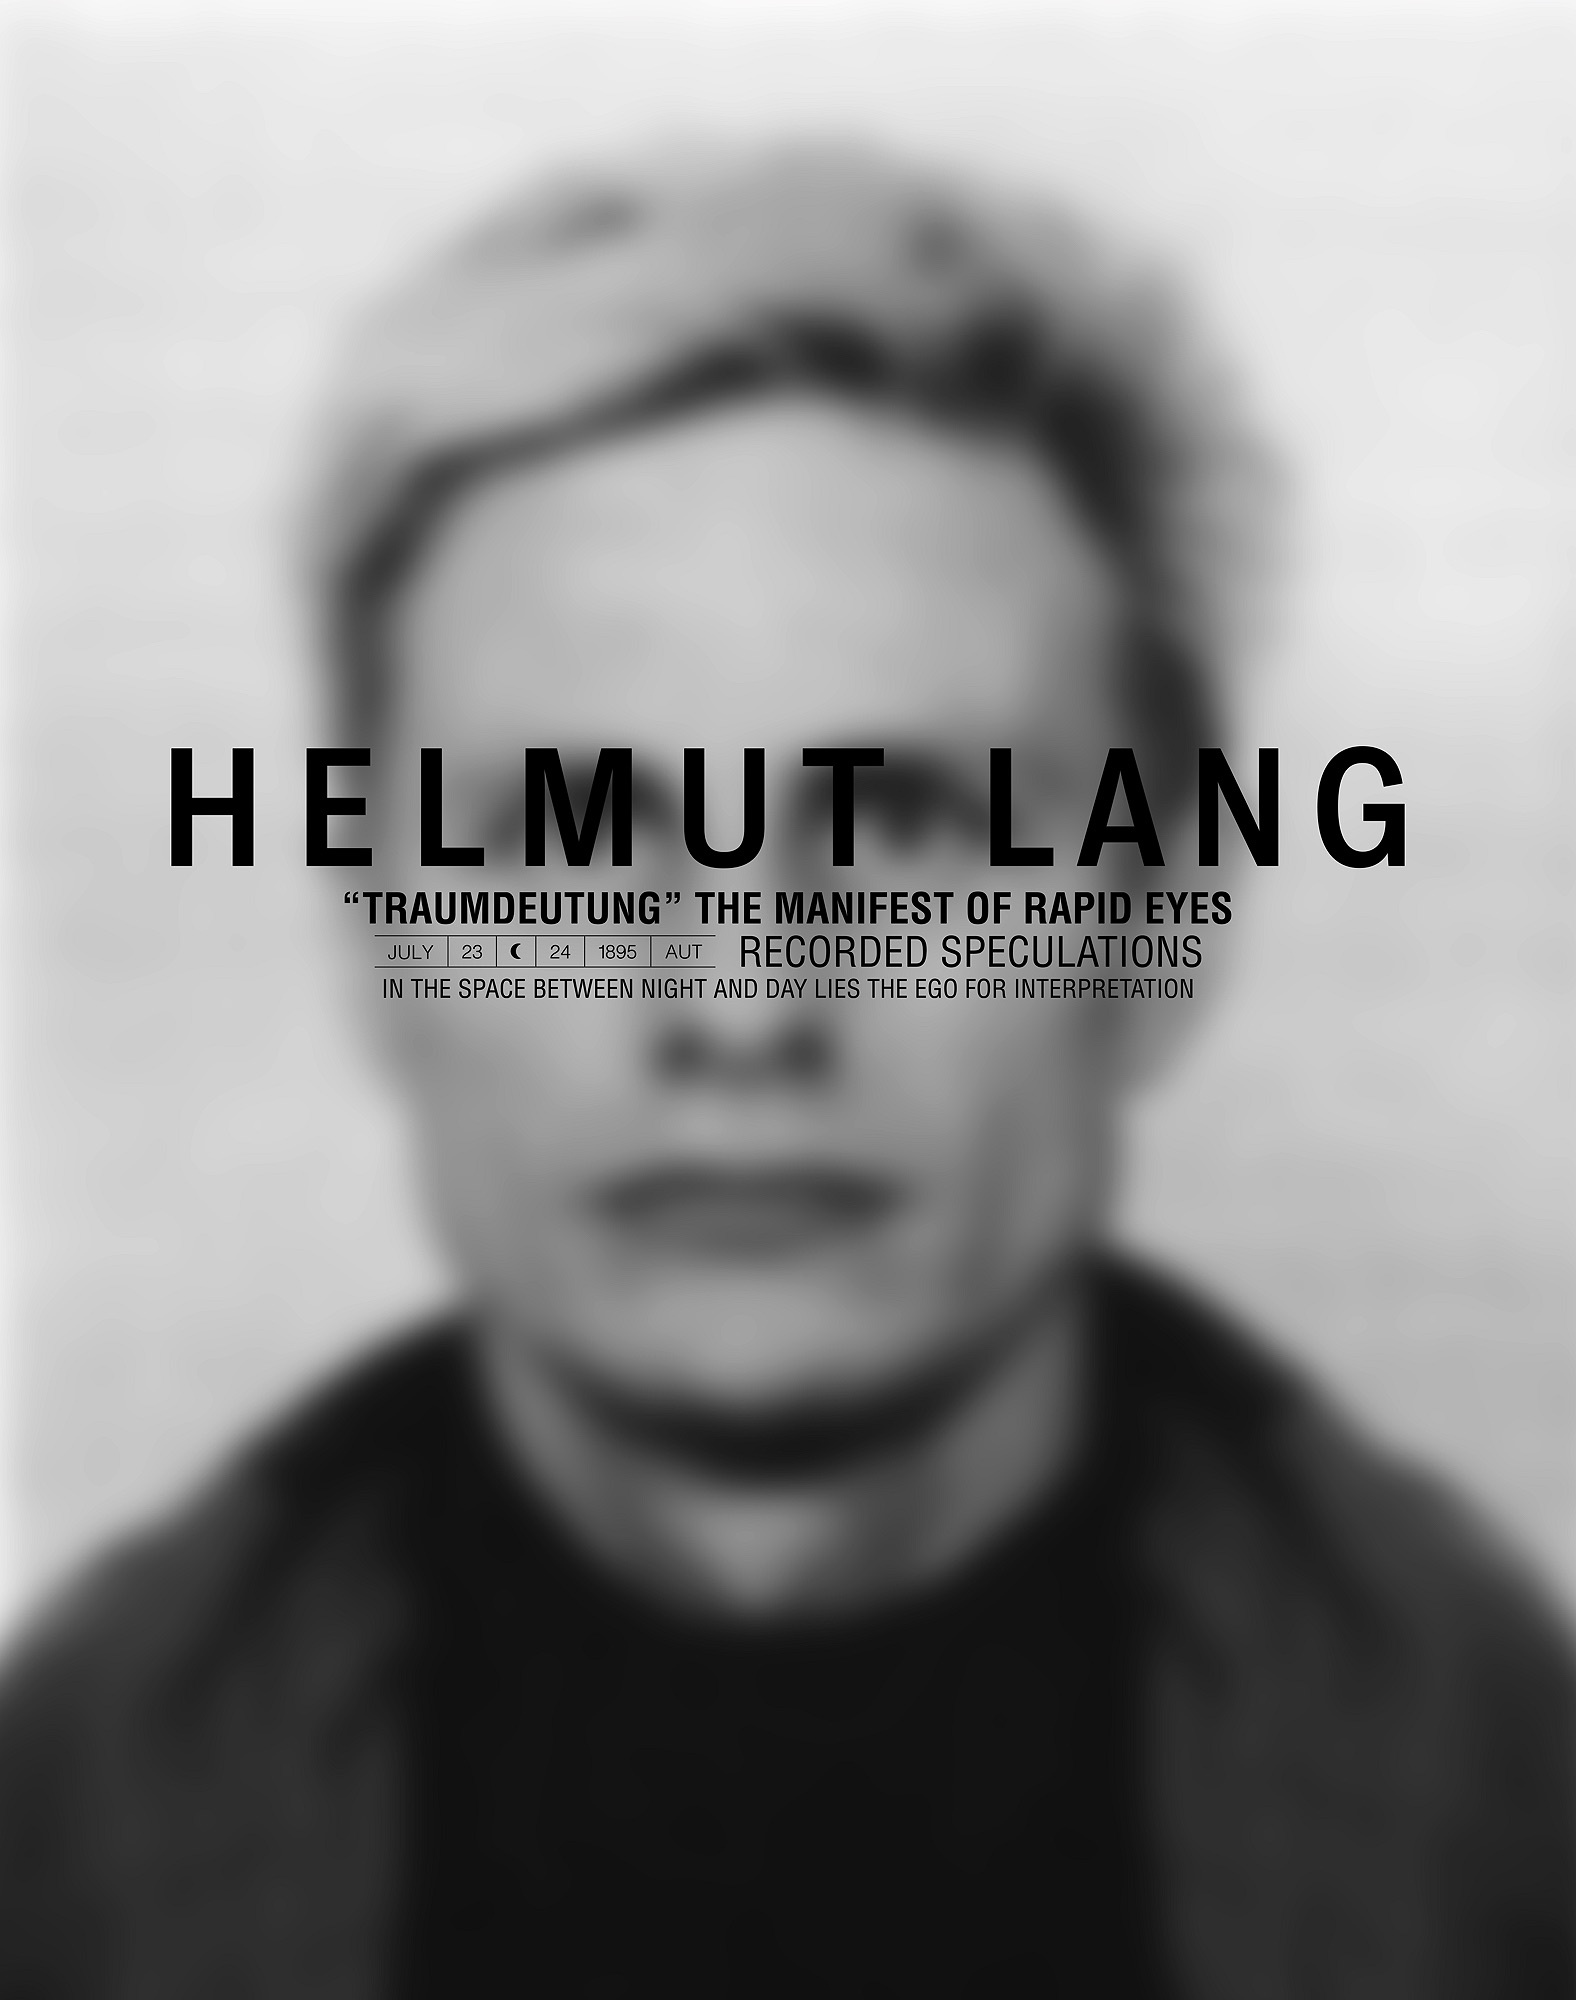 ヘルムートラング Helmut Lang の歴史 デザイナーとしてのキャリアと故郷オーストリア Gxomens Blog 大人のいい男を目指すメンズファッションマガジン